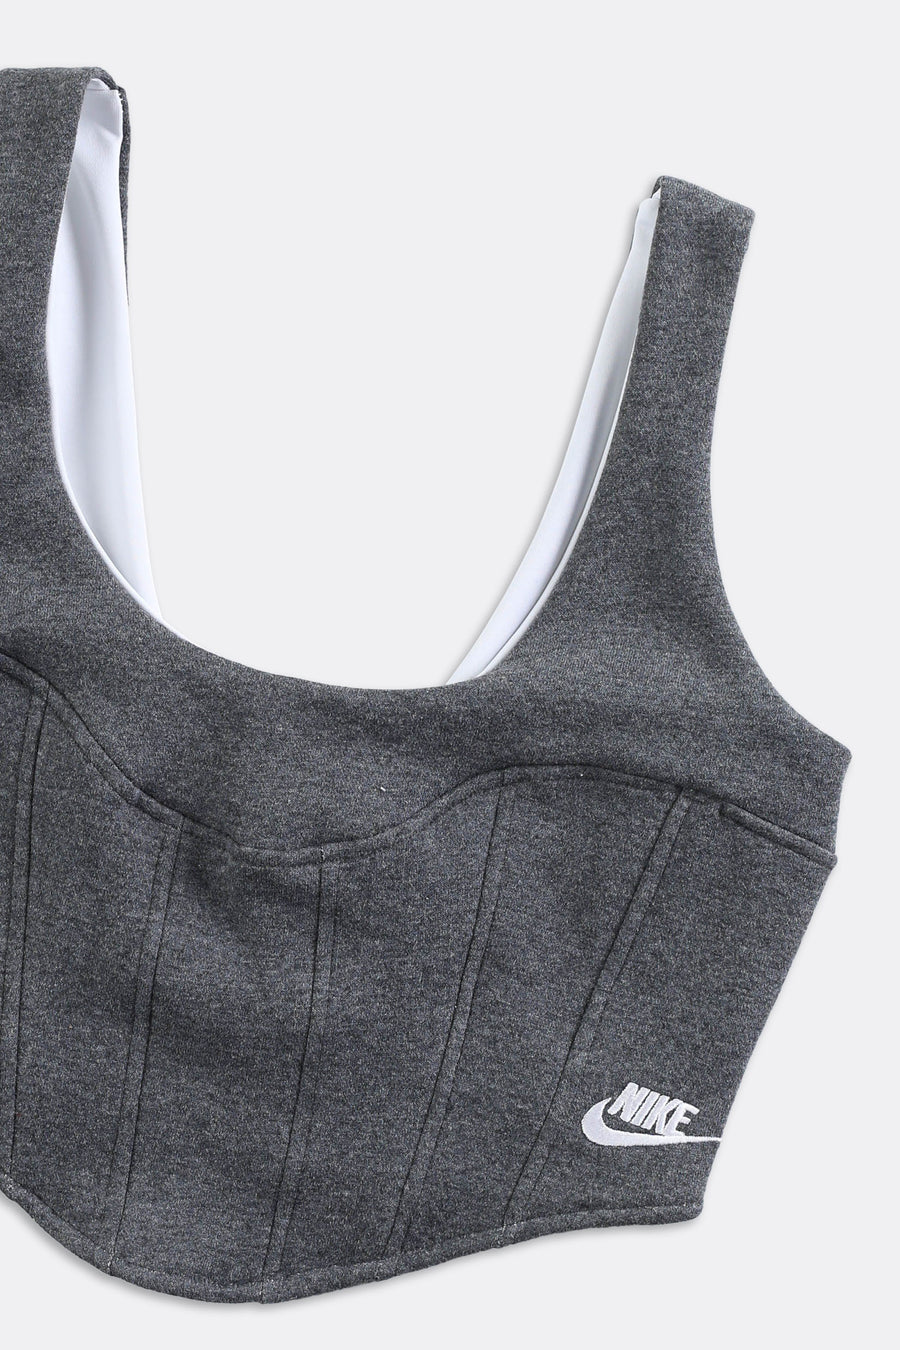 Rework Nike Sweatshirt Bustier - XS, S, M, L, XL, 2XL